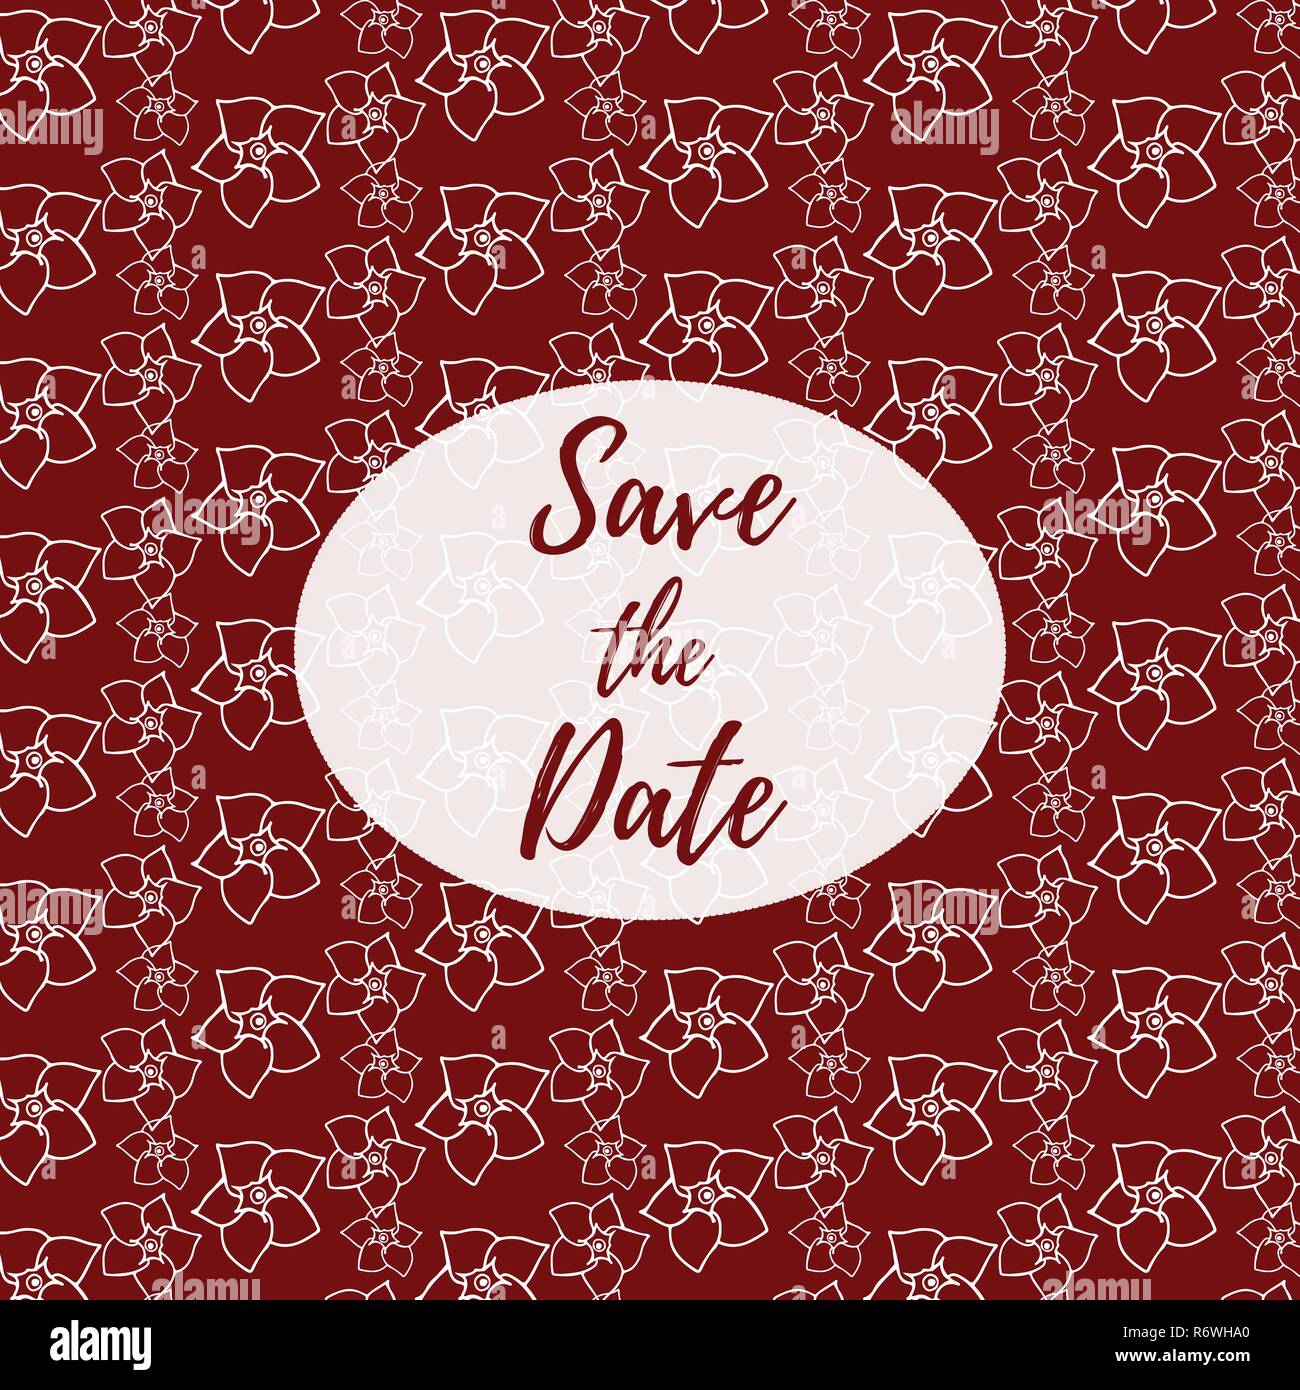 Datum speichern, Hochzeit Einladungskarte Vorlage mit weißen Blumen vector pattern Abbildung auf einem dunklen roten Hintergrund. Floral background. Stock Vektor